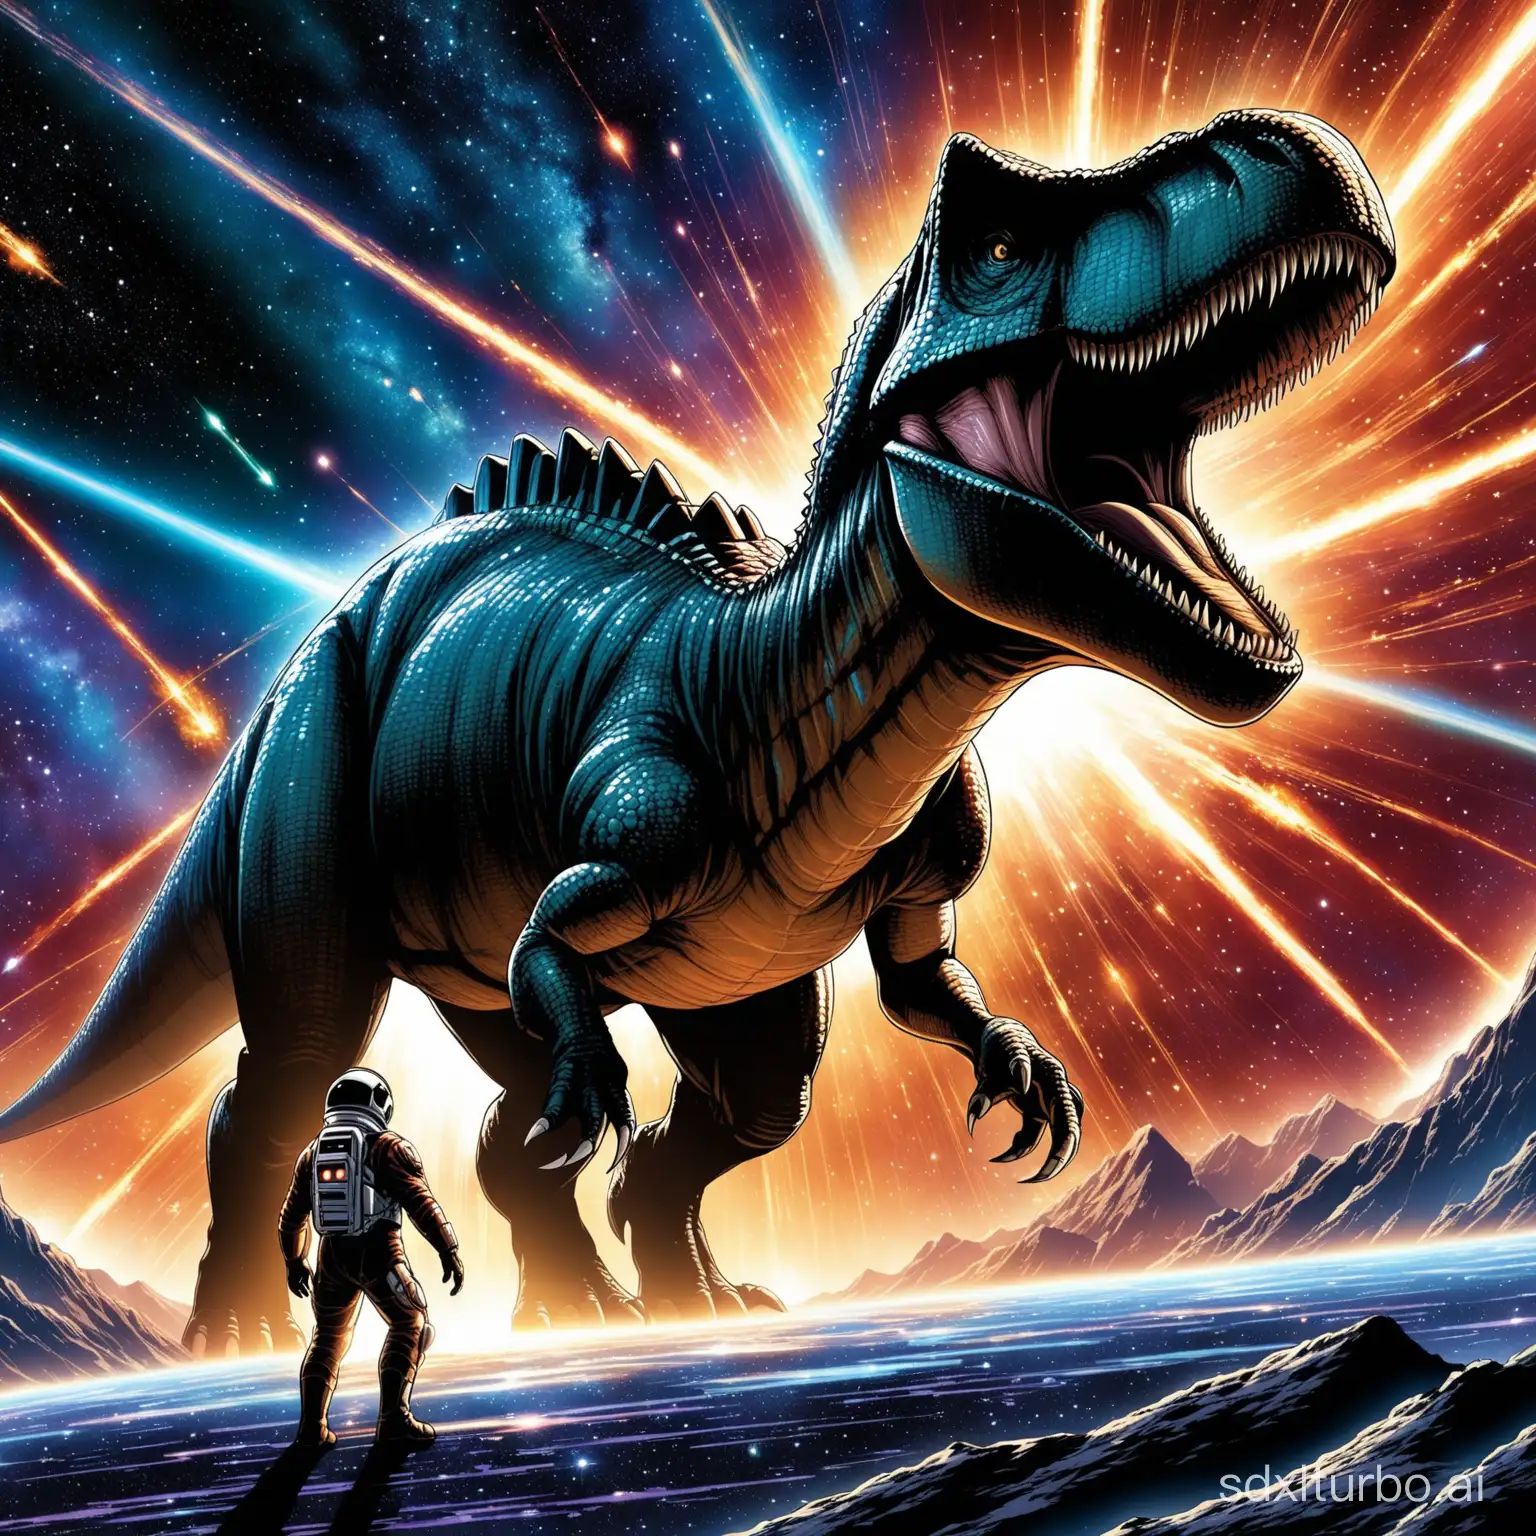 在宇宙中發生了恐龍大爆炸，在和病毒們抗爭，最後是人與神合作一拯救宇宙星際大戰。